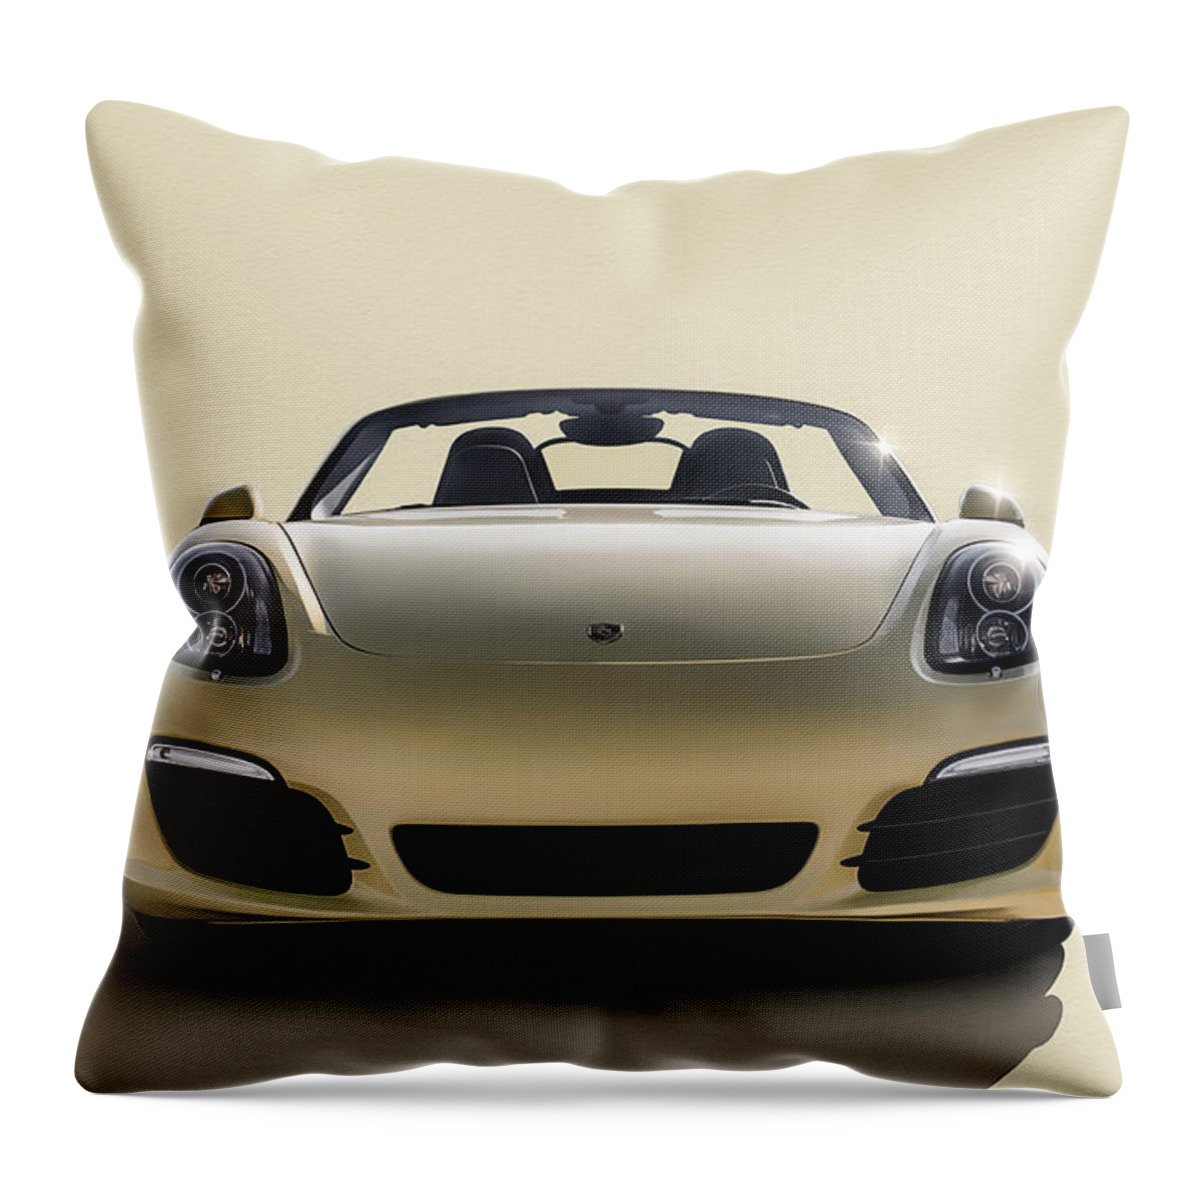 Porsche Throw Pillow featuring the digital art Boxter by Douglas Pittman